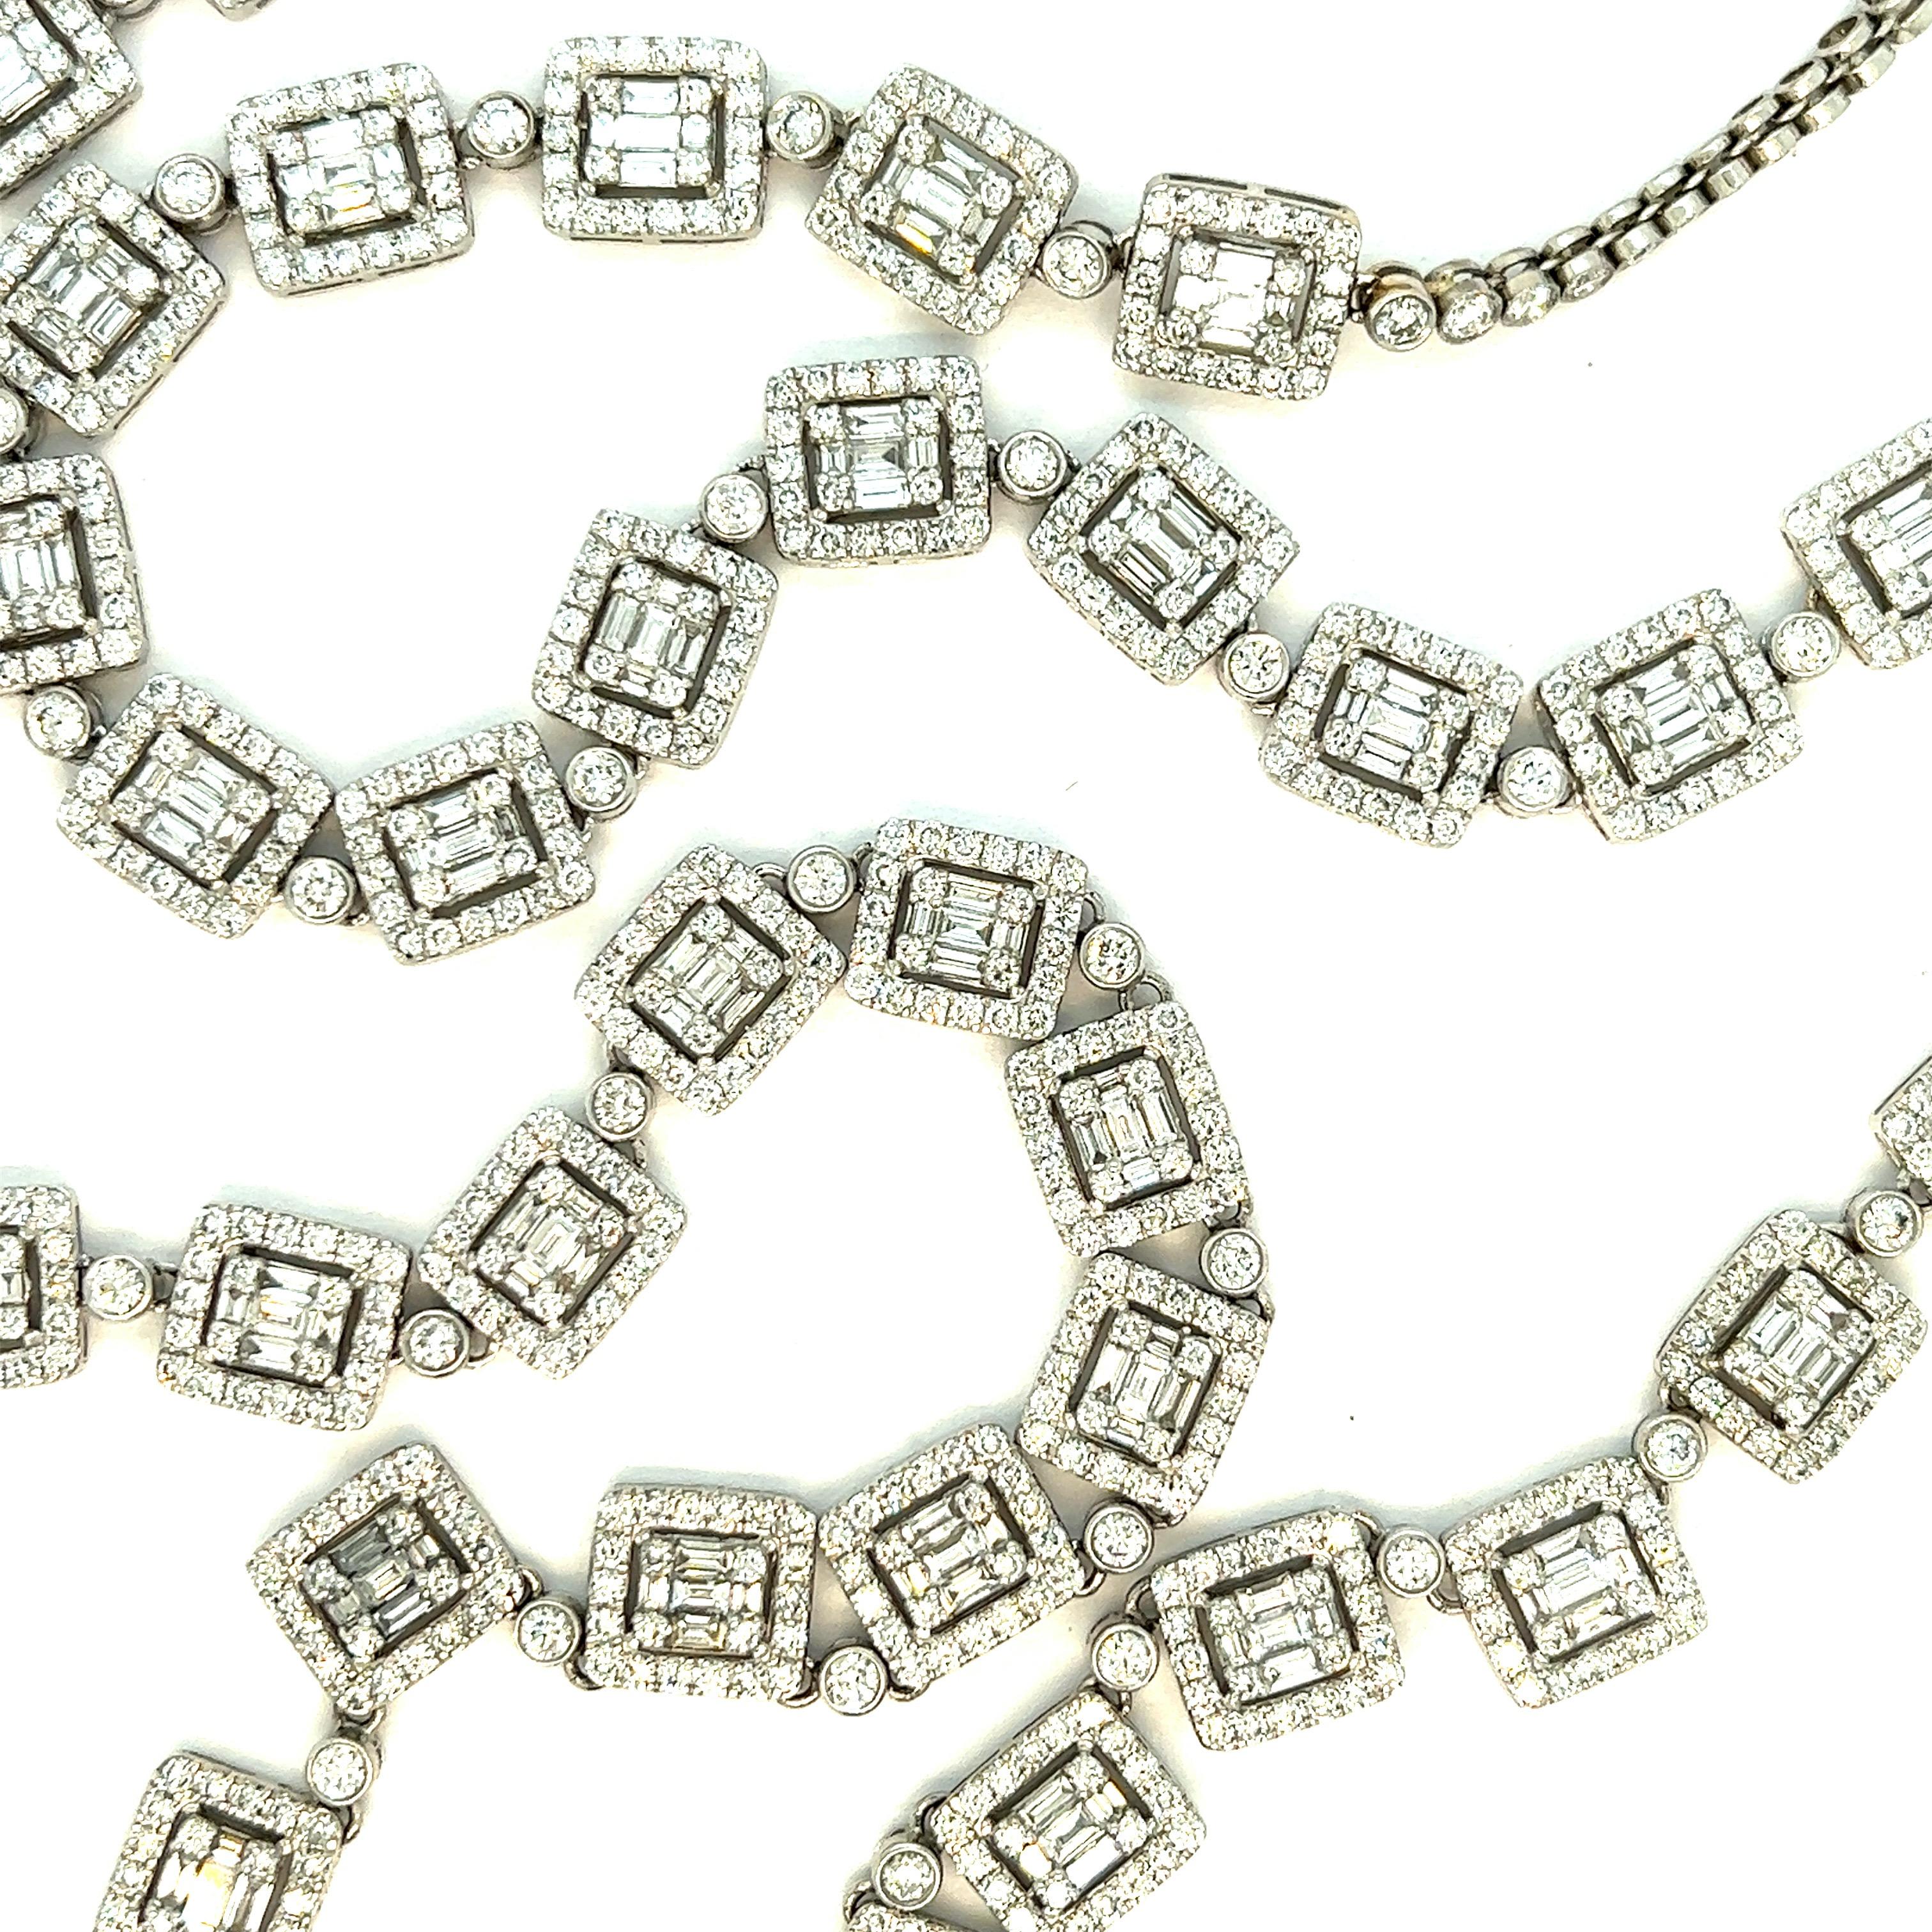 Sautoir en or blanc avec diamants

Diamants ronds et baguettes d'environ 32 carats, or blanc 18 carats ; chaîne marquée 18K

Taille : largeur 0,31 pouce, longueur 31 pouces
Poids total : 69,3 grammes